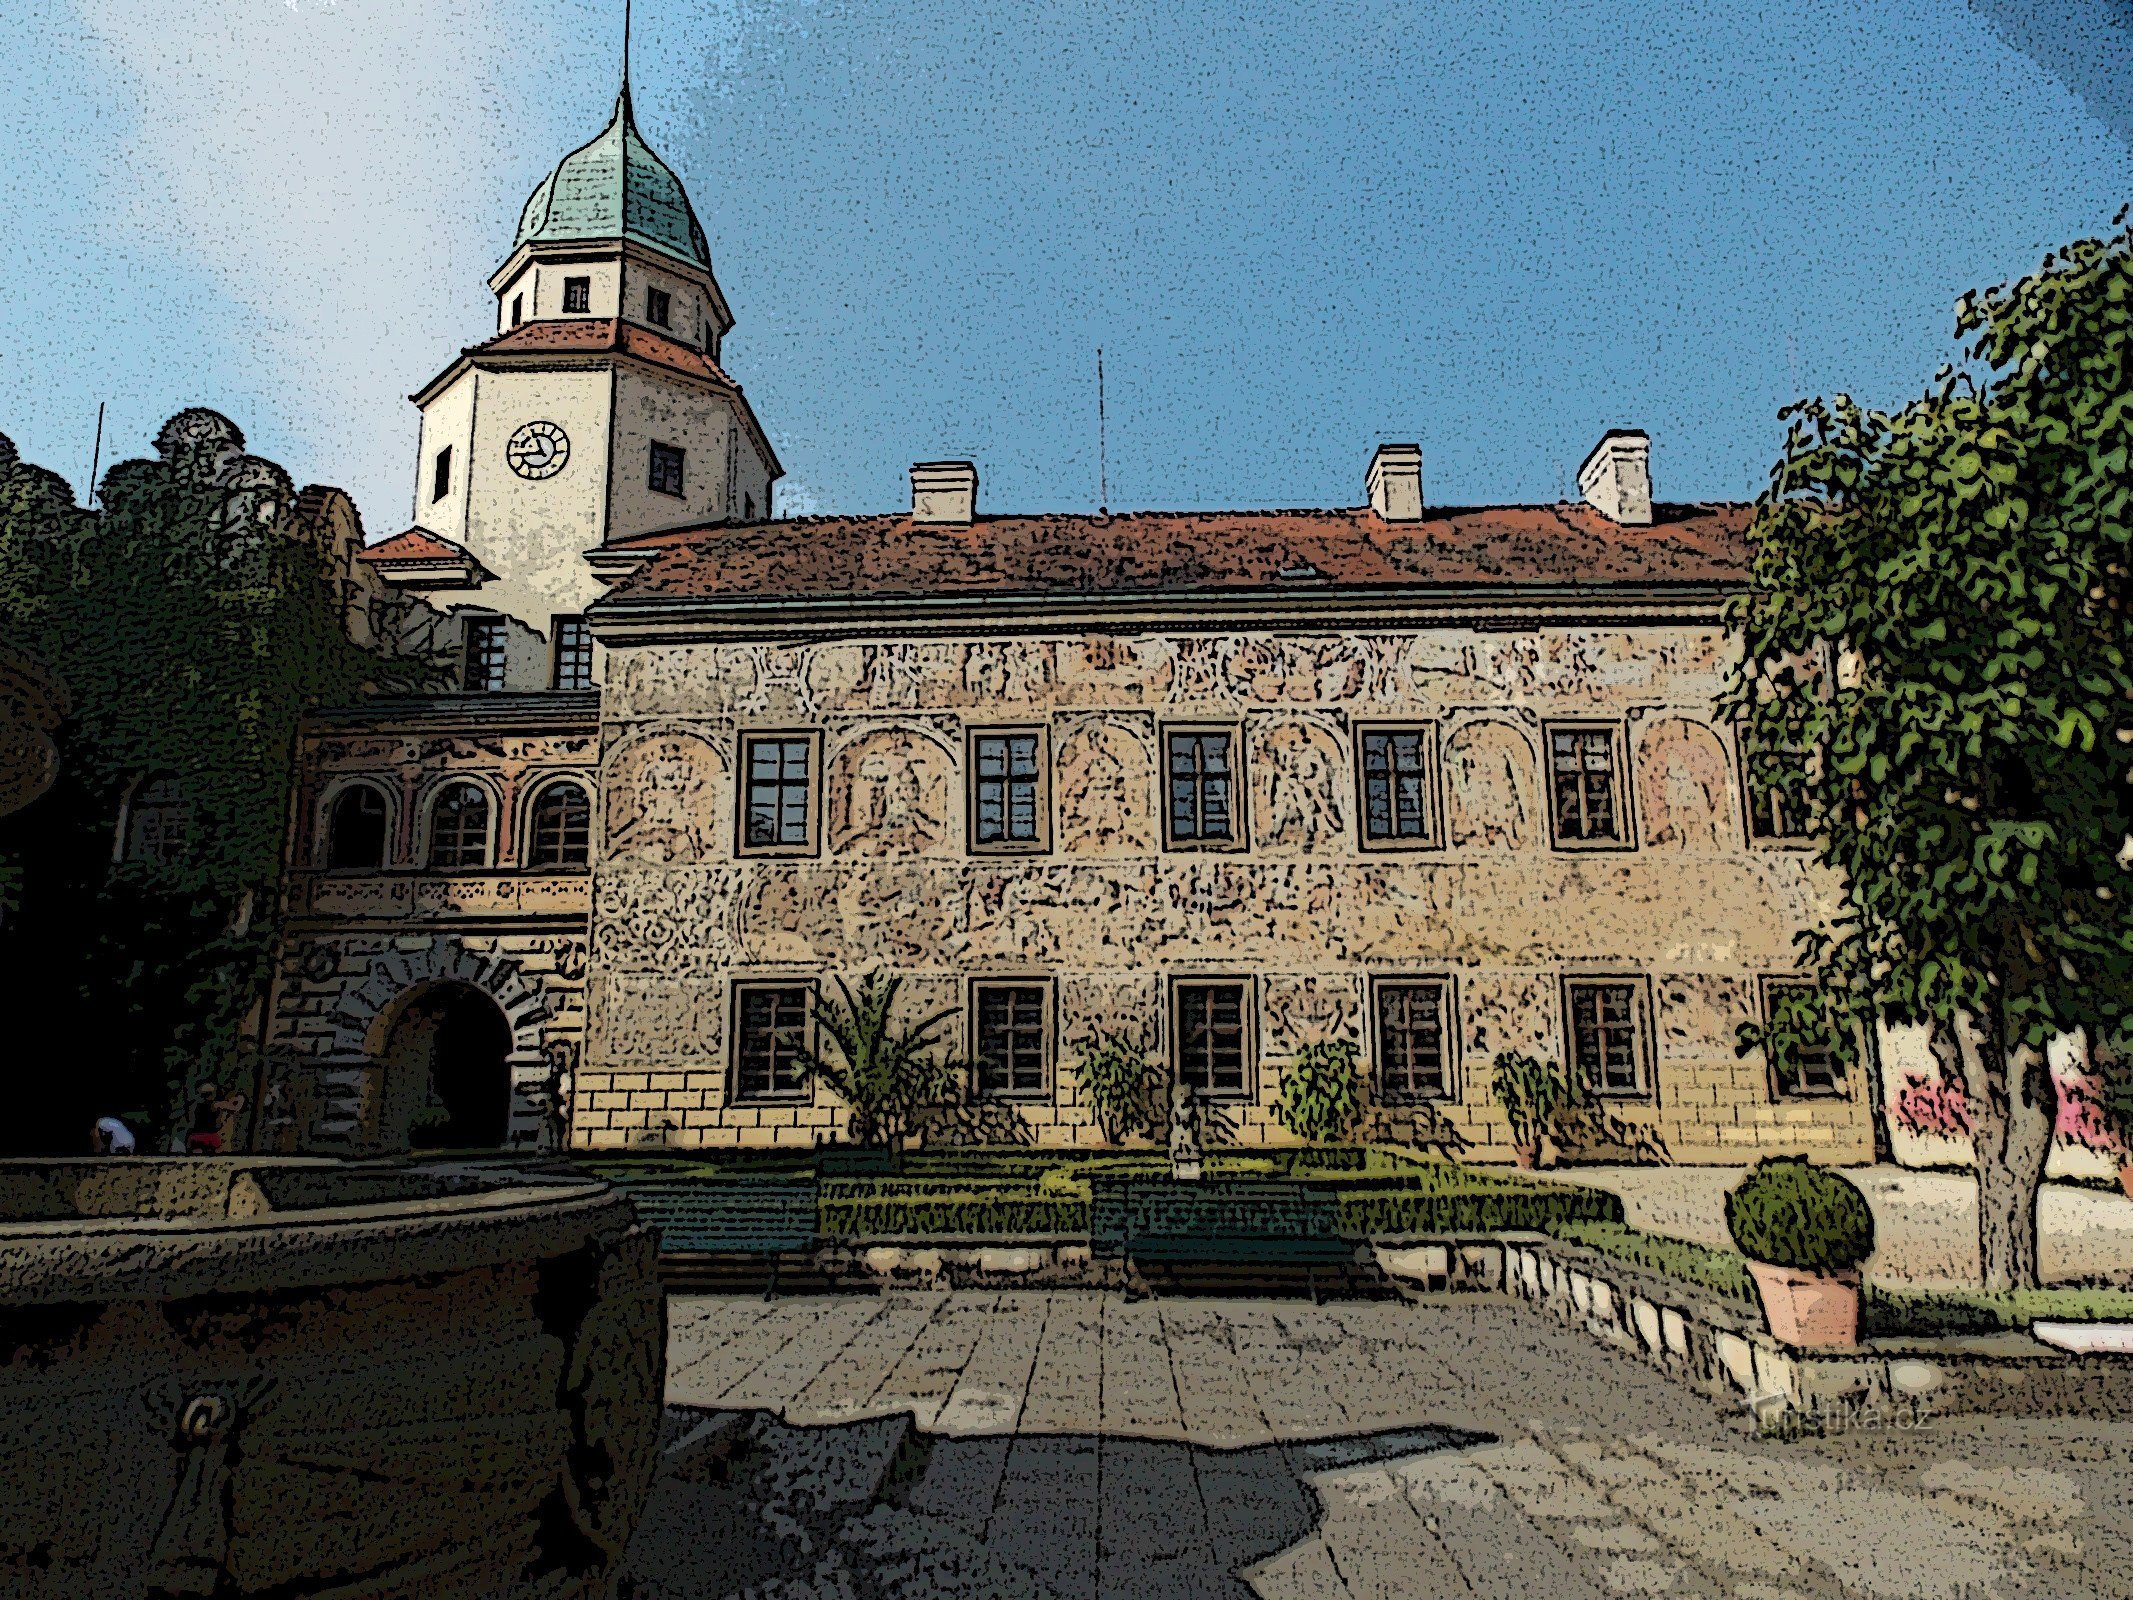 Častolovice 的城堡庭院